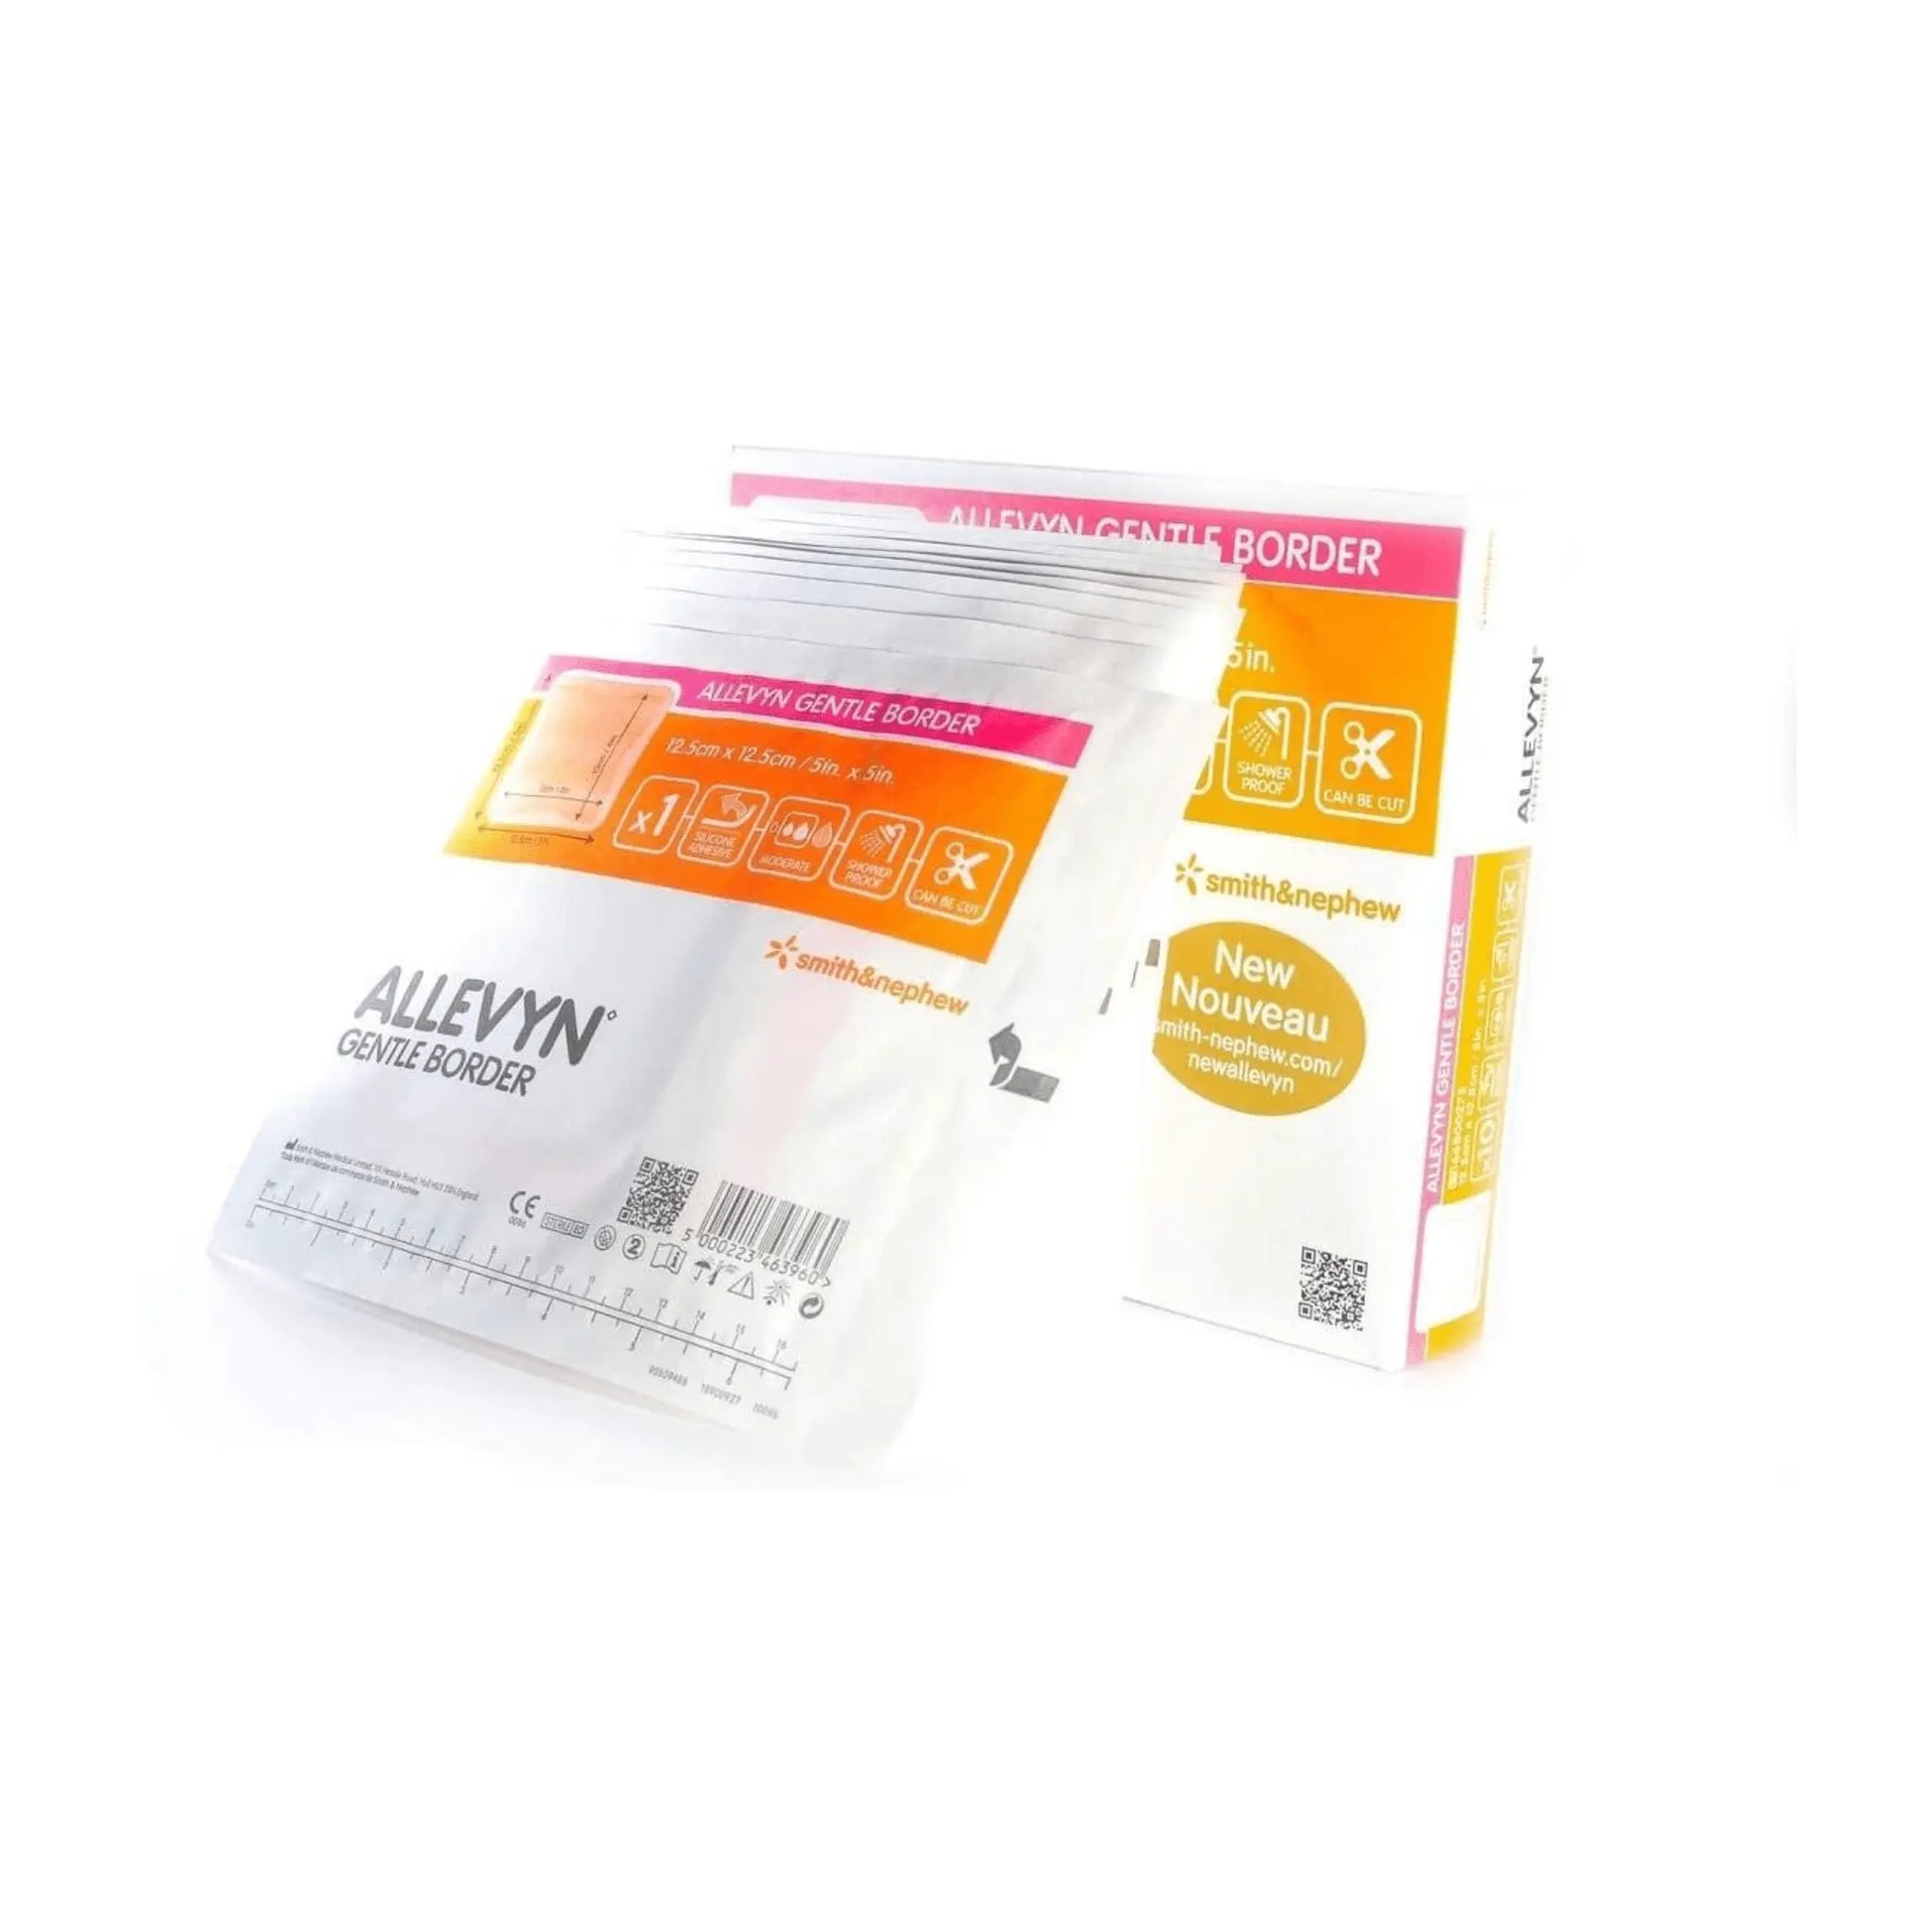 Allevyn Gentle Border 12.5cm x 12.5cm Adhesive Foam 10 Dressing - Arc Health Nutrition UK Ltd